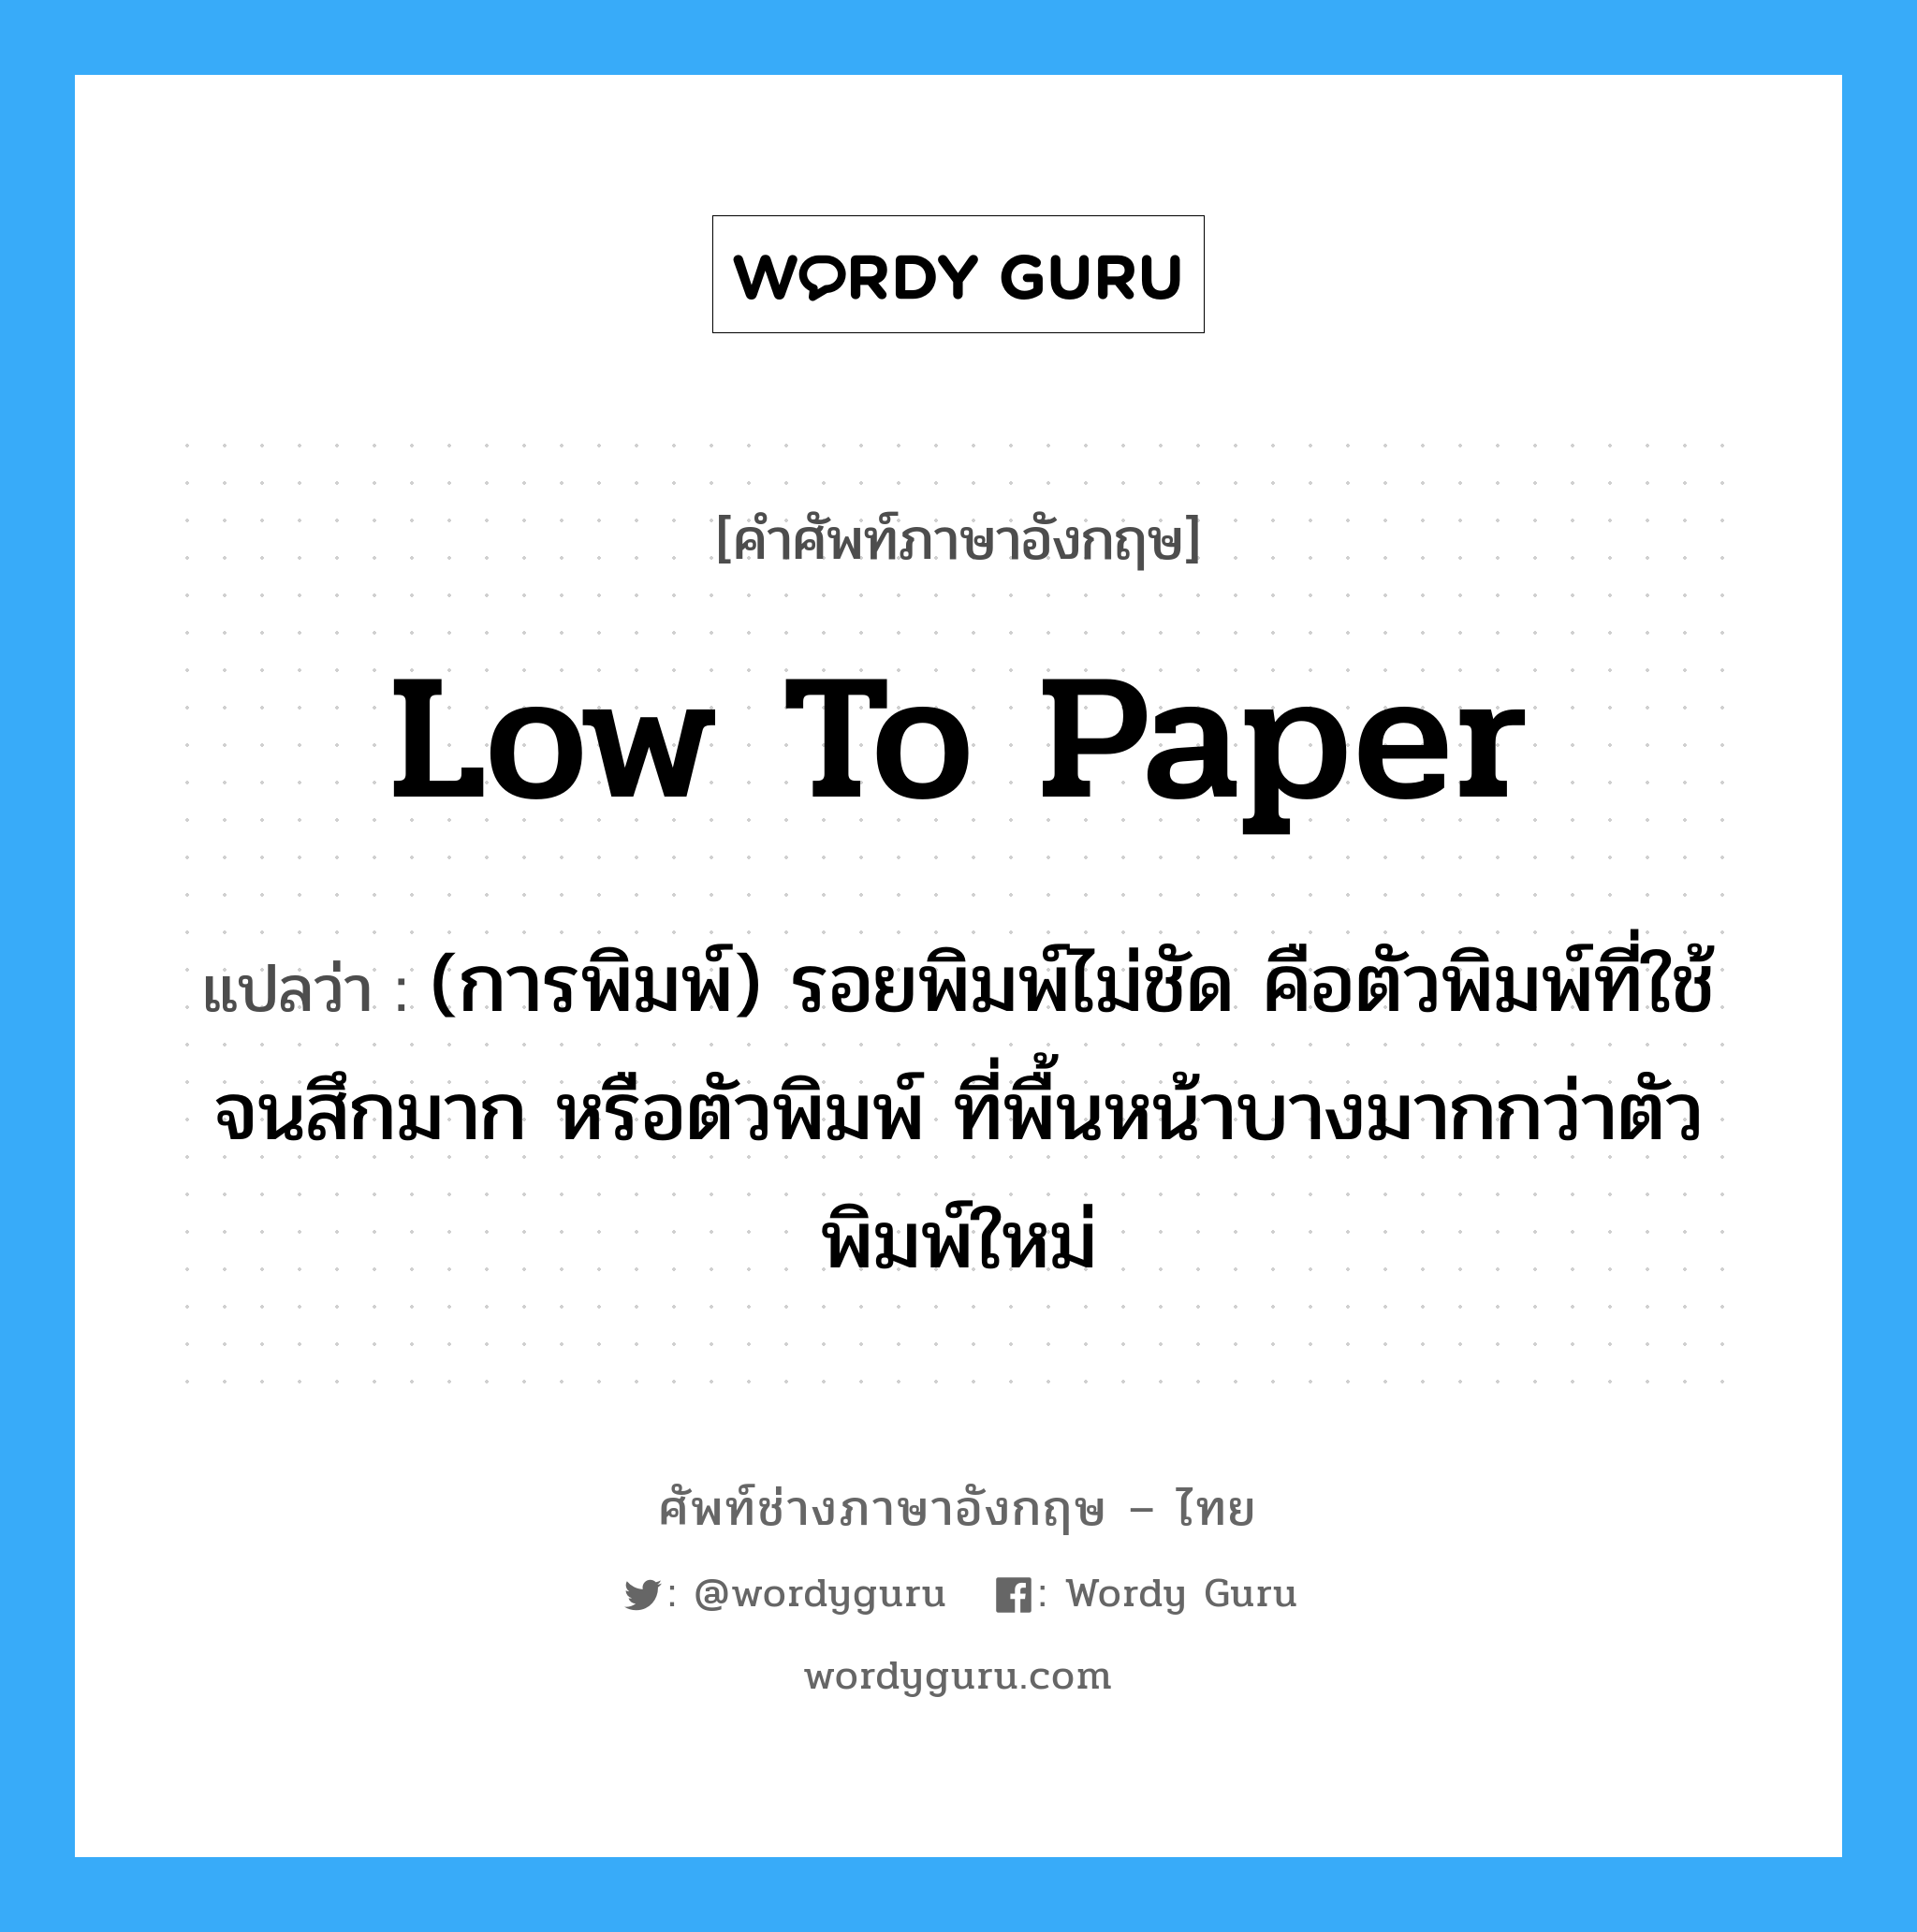 low to paper แปลว่า?, คำศัพท์ช่างภาษาอังกฤษ - ไทย low to paper คำศัพท์ภาษาอังกฤษ low to paper แปลว่า (การพิมพ์) รอยพิมพ์ไม่ชัด คือตัวพิมพ์ที่ใช้จนสึกมาก หรือตัวพิมพ์ ที่พื้นหน้าบางมากกว่าตัวพิมพ์ใหม่